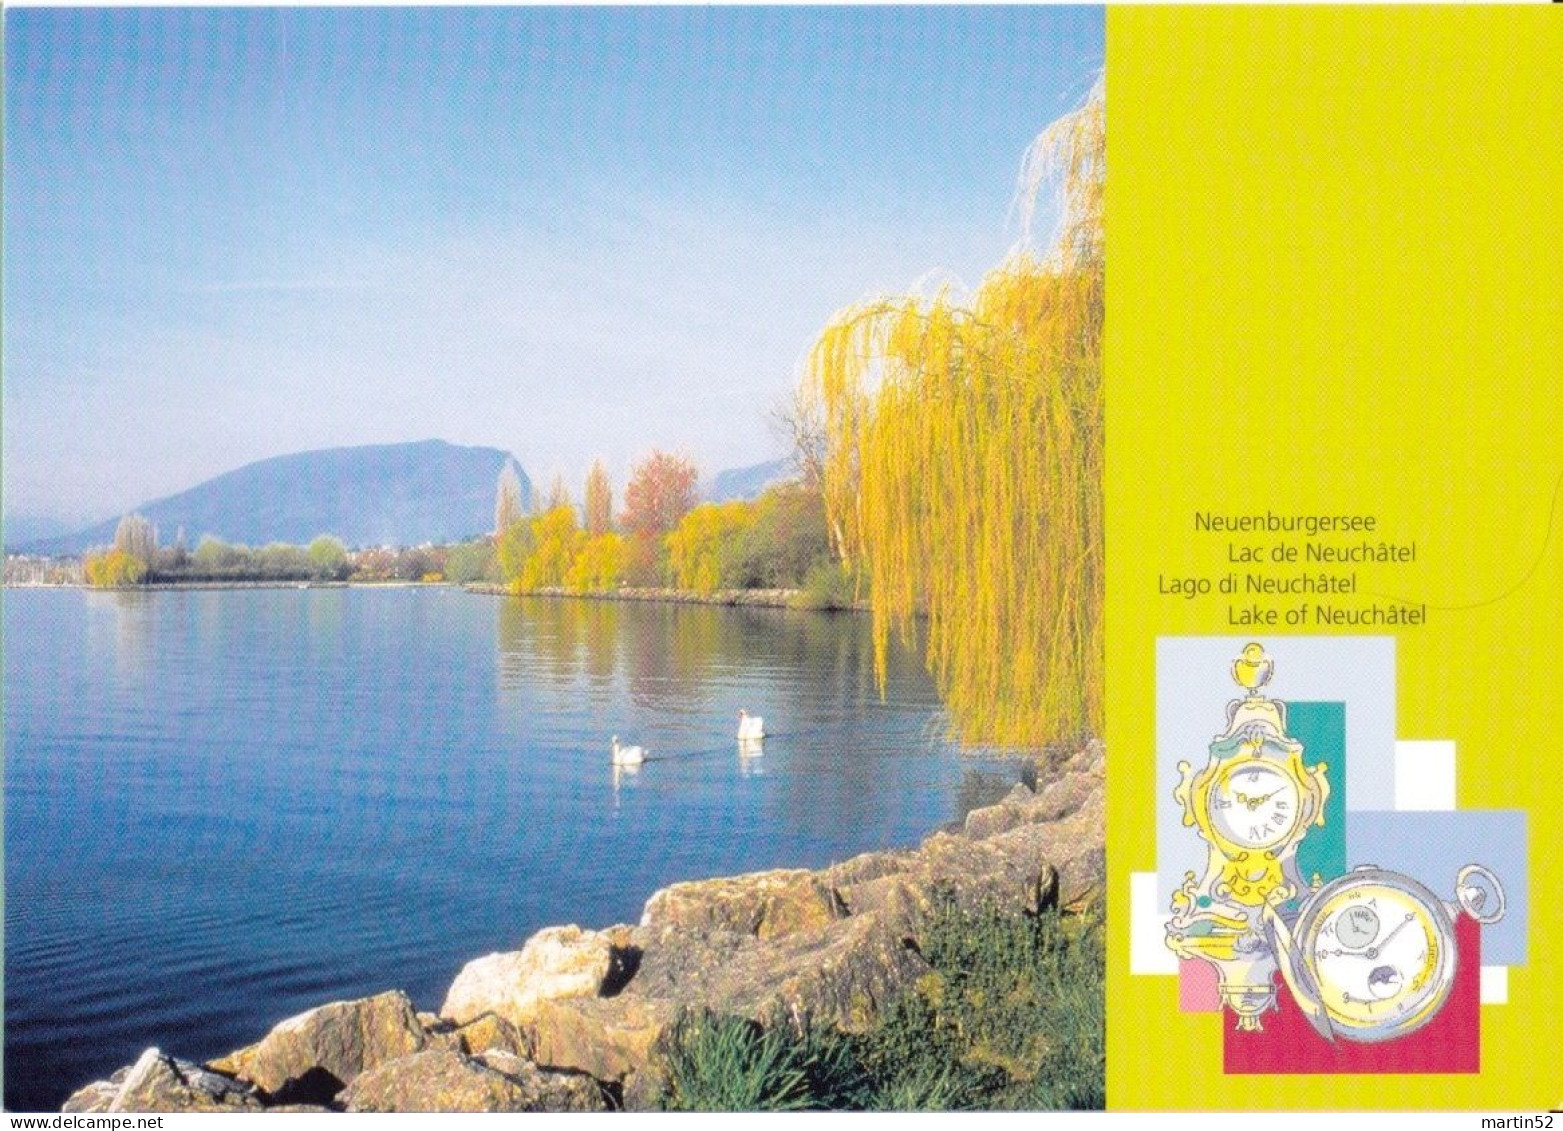 Schweiz Suisse 2002: Neuenburger See (Uhren) Lac De Neuchâtel (Pendules) CPI Entier / Bild-PK (ungelaufen Non Circulé) - Uhrmacherei